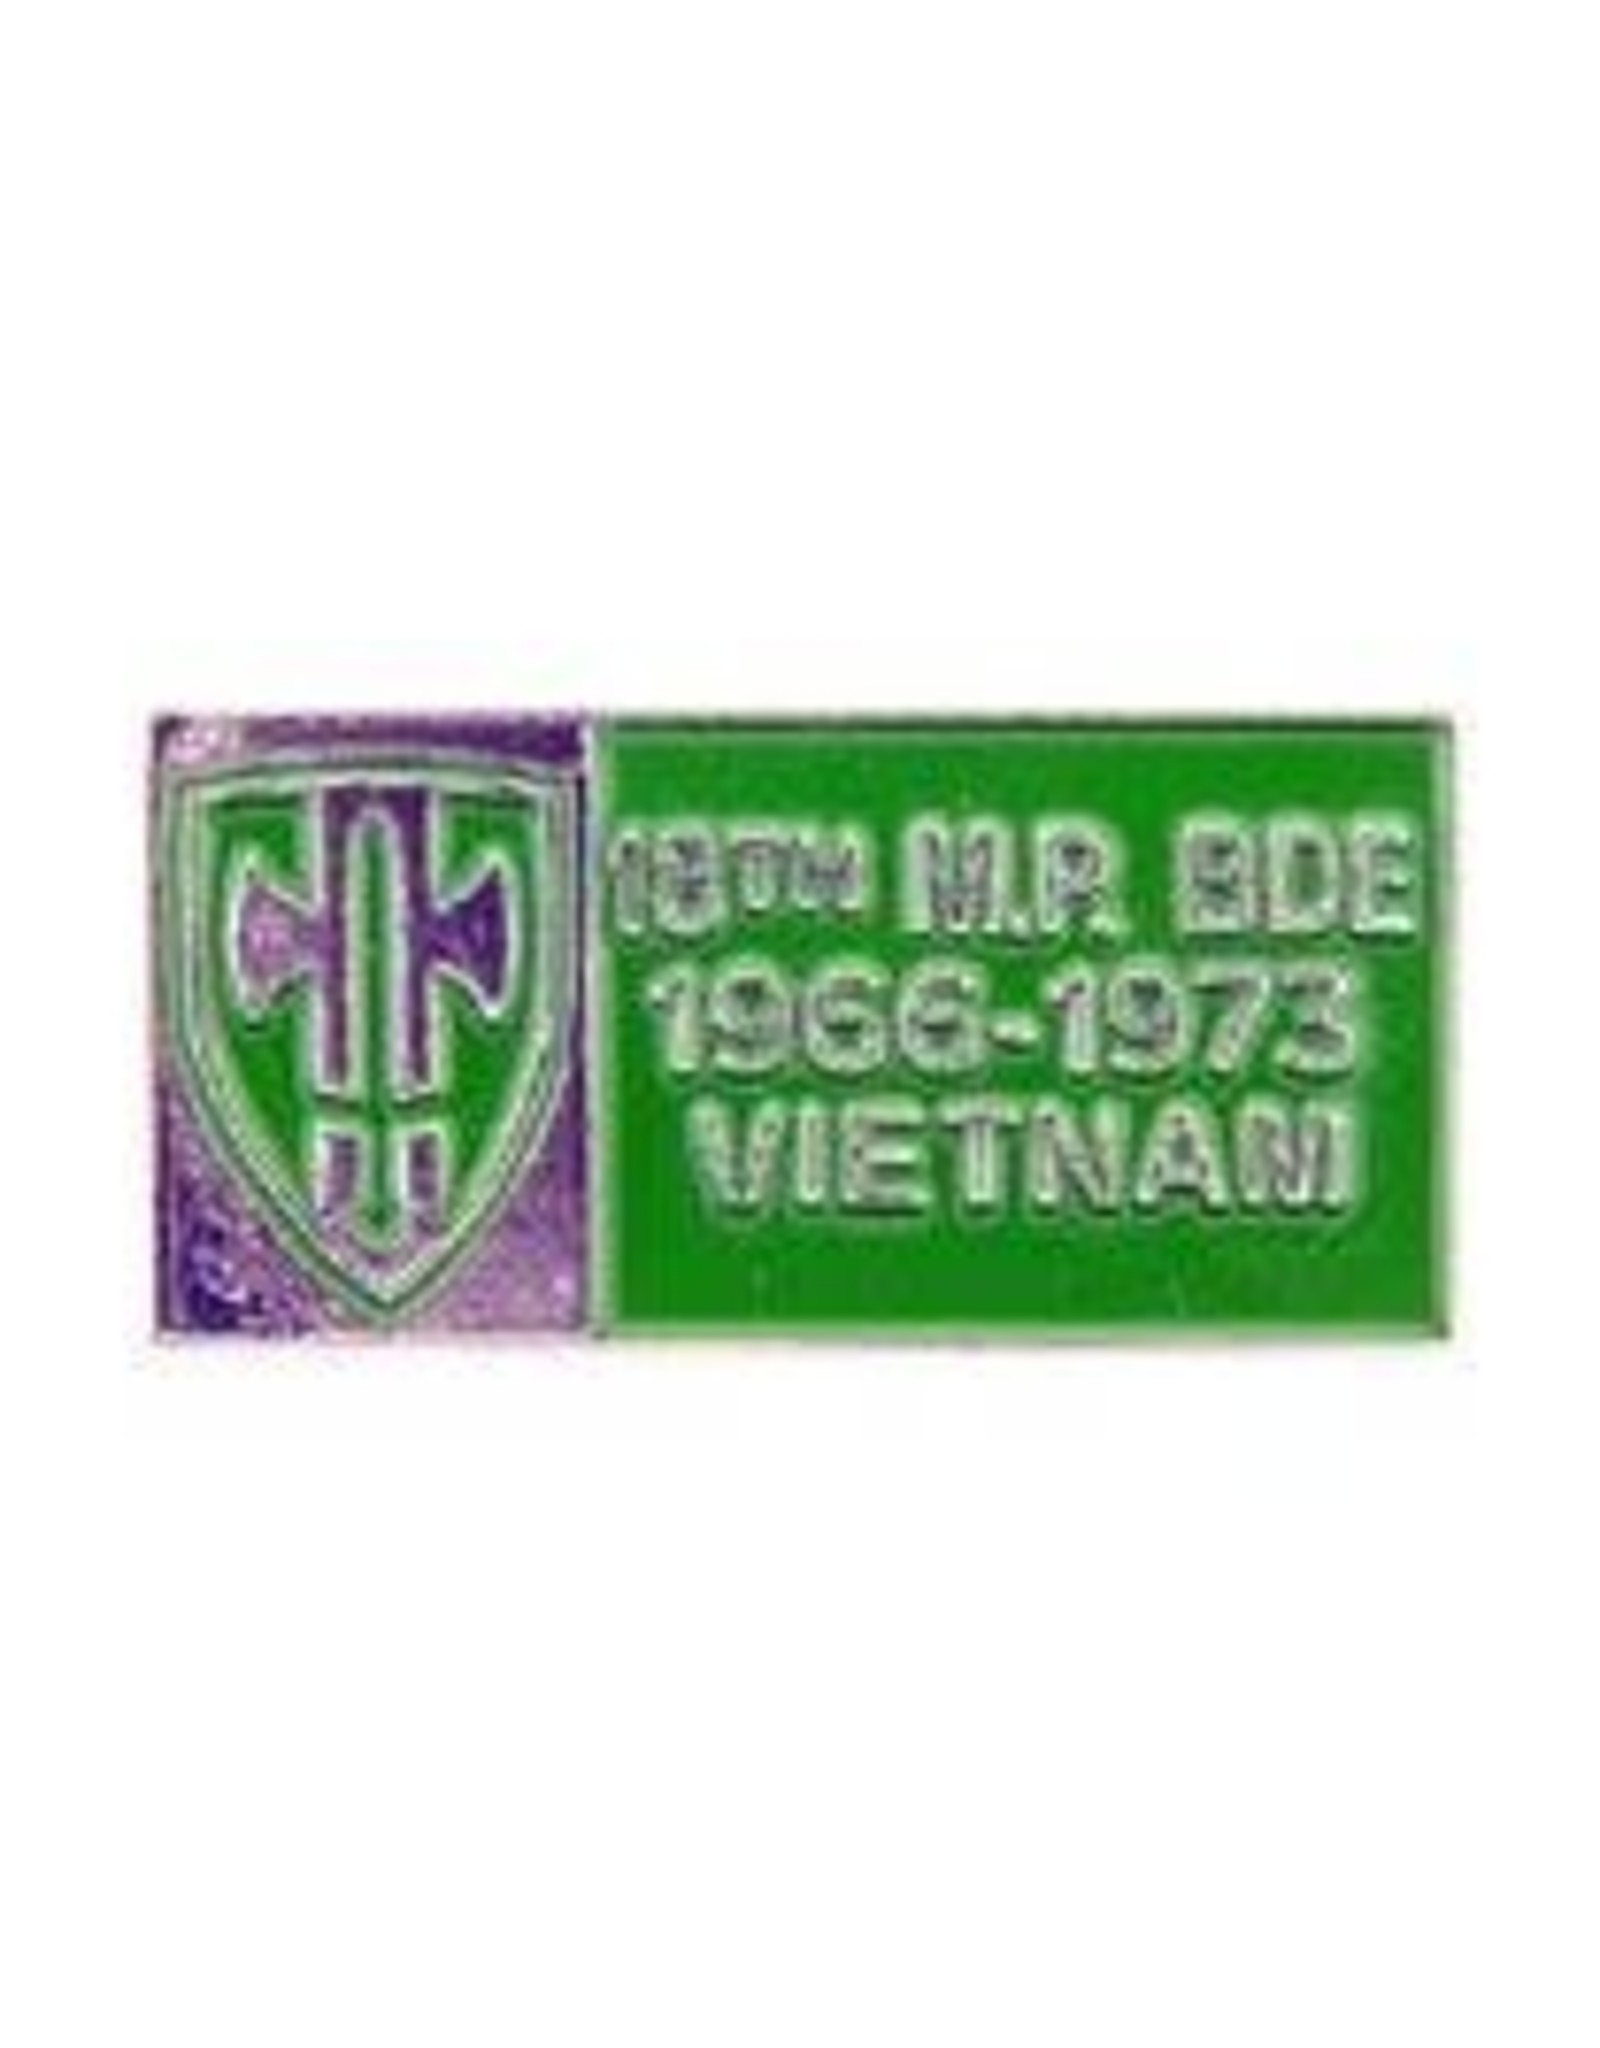 Pin - Vietnam Bdg 18th MP Brg 66-73